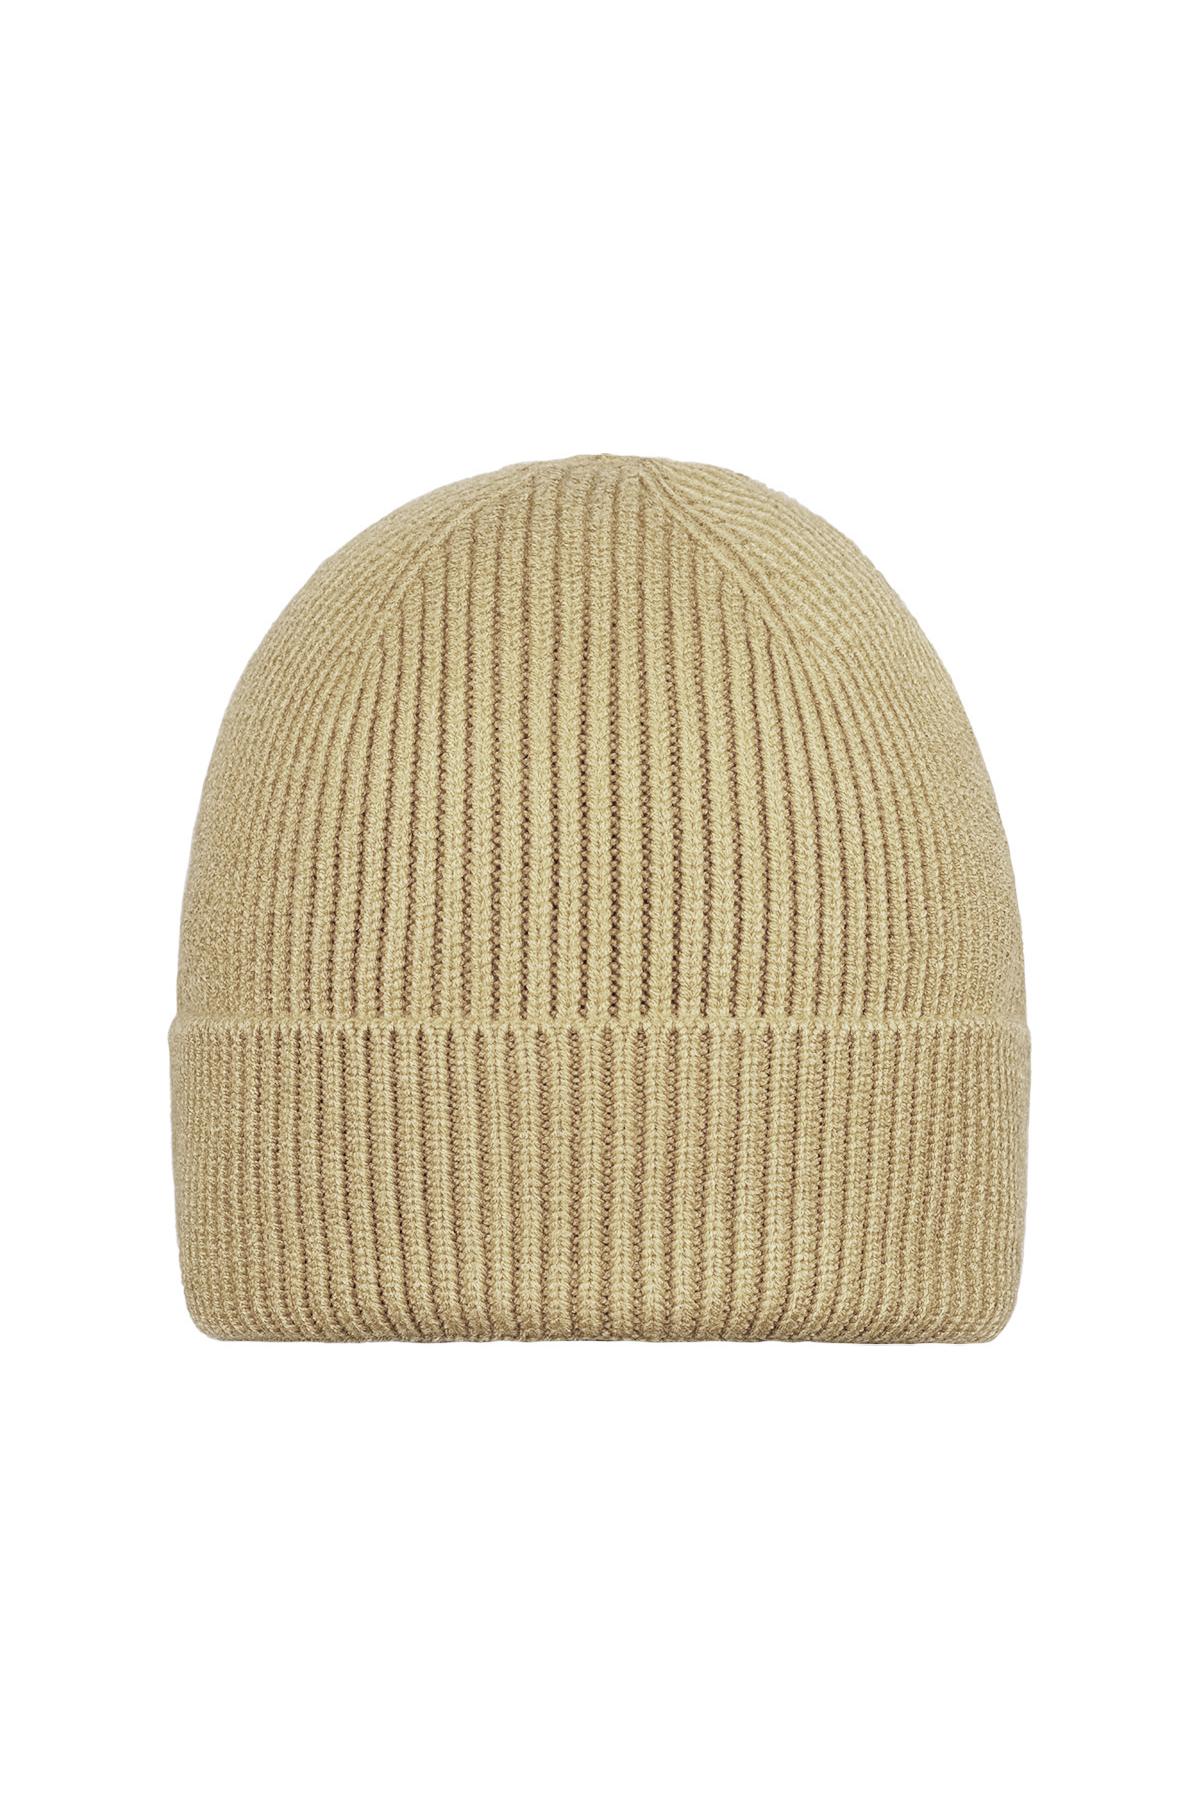 Kışlık şapka kum rengi Sand Acrylic h5 